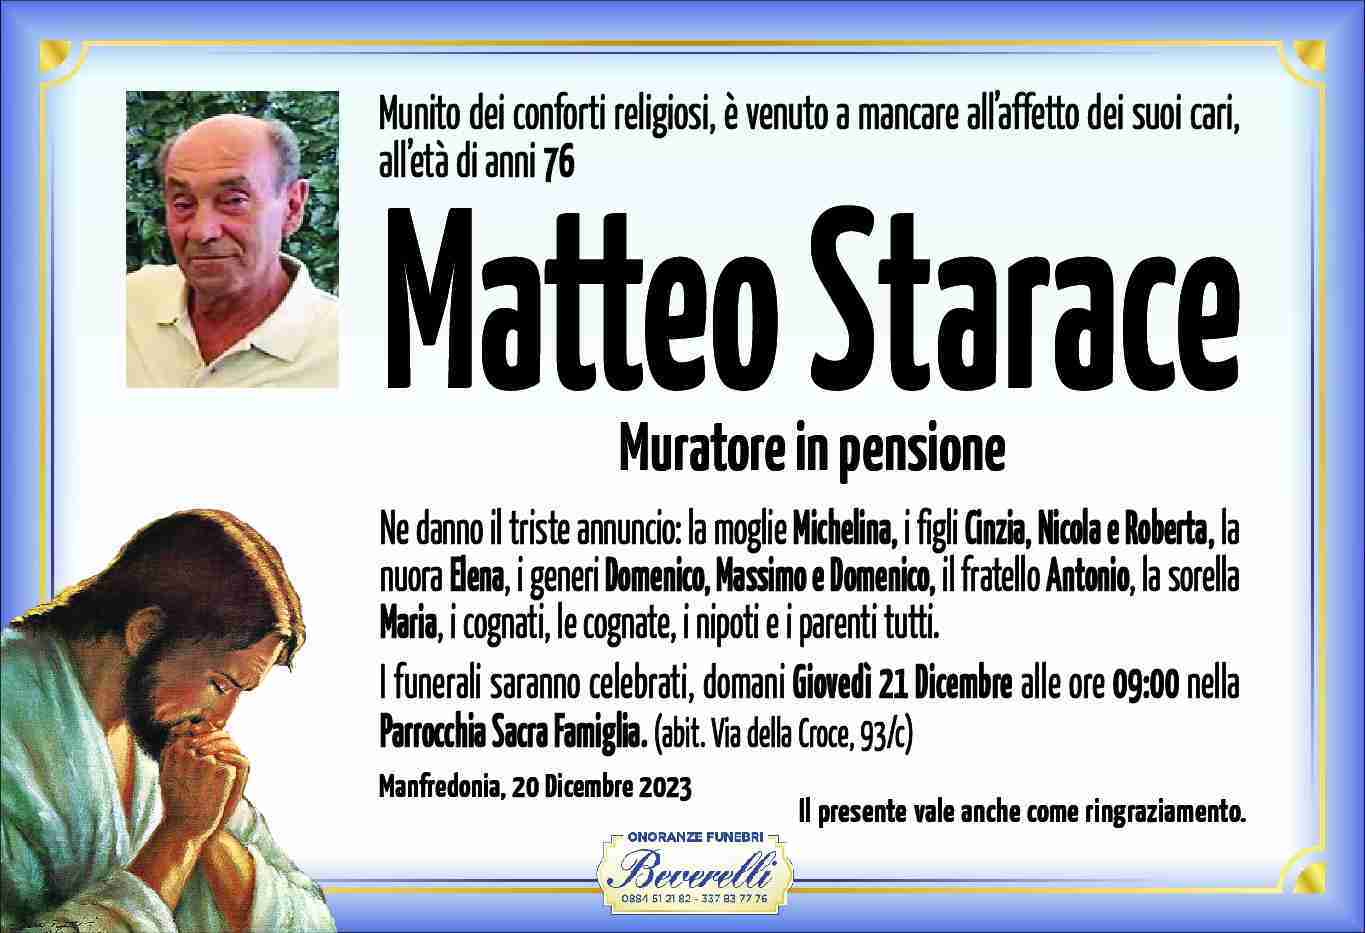 Matteo Starace